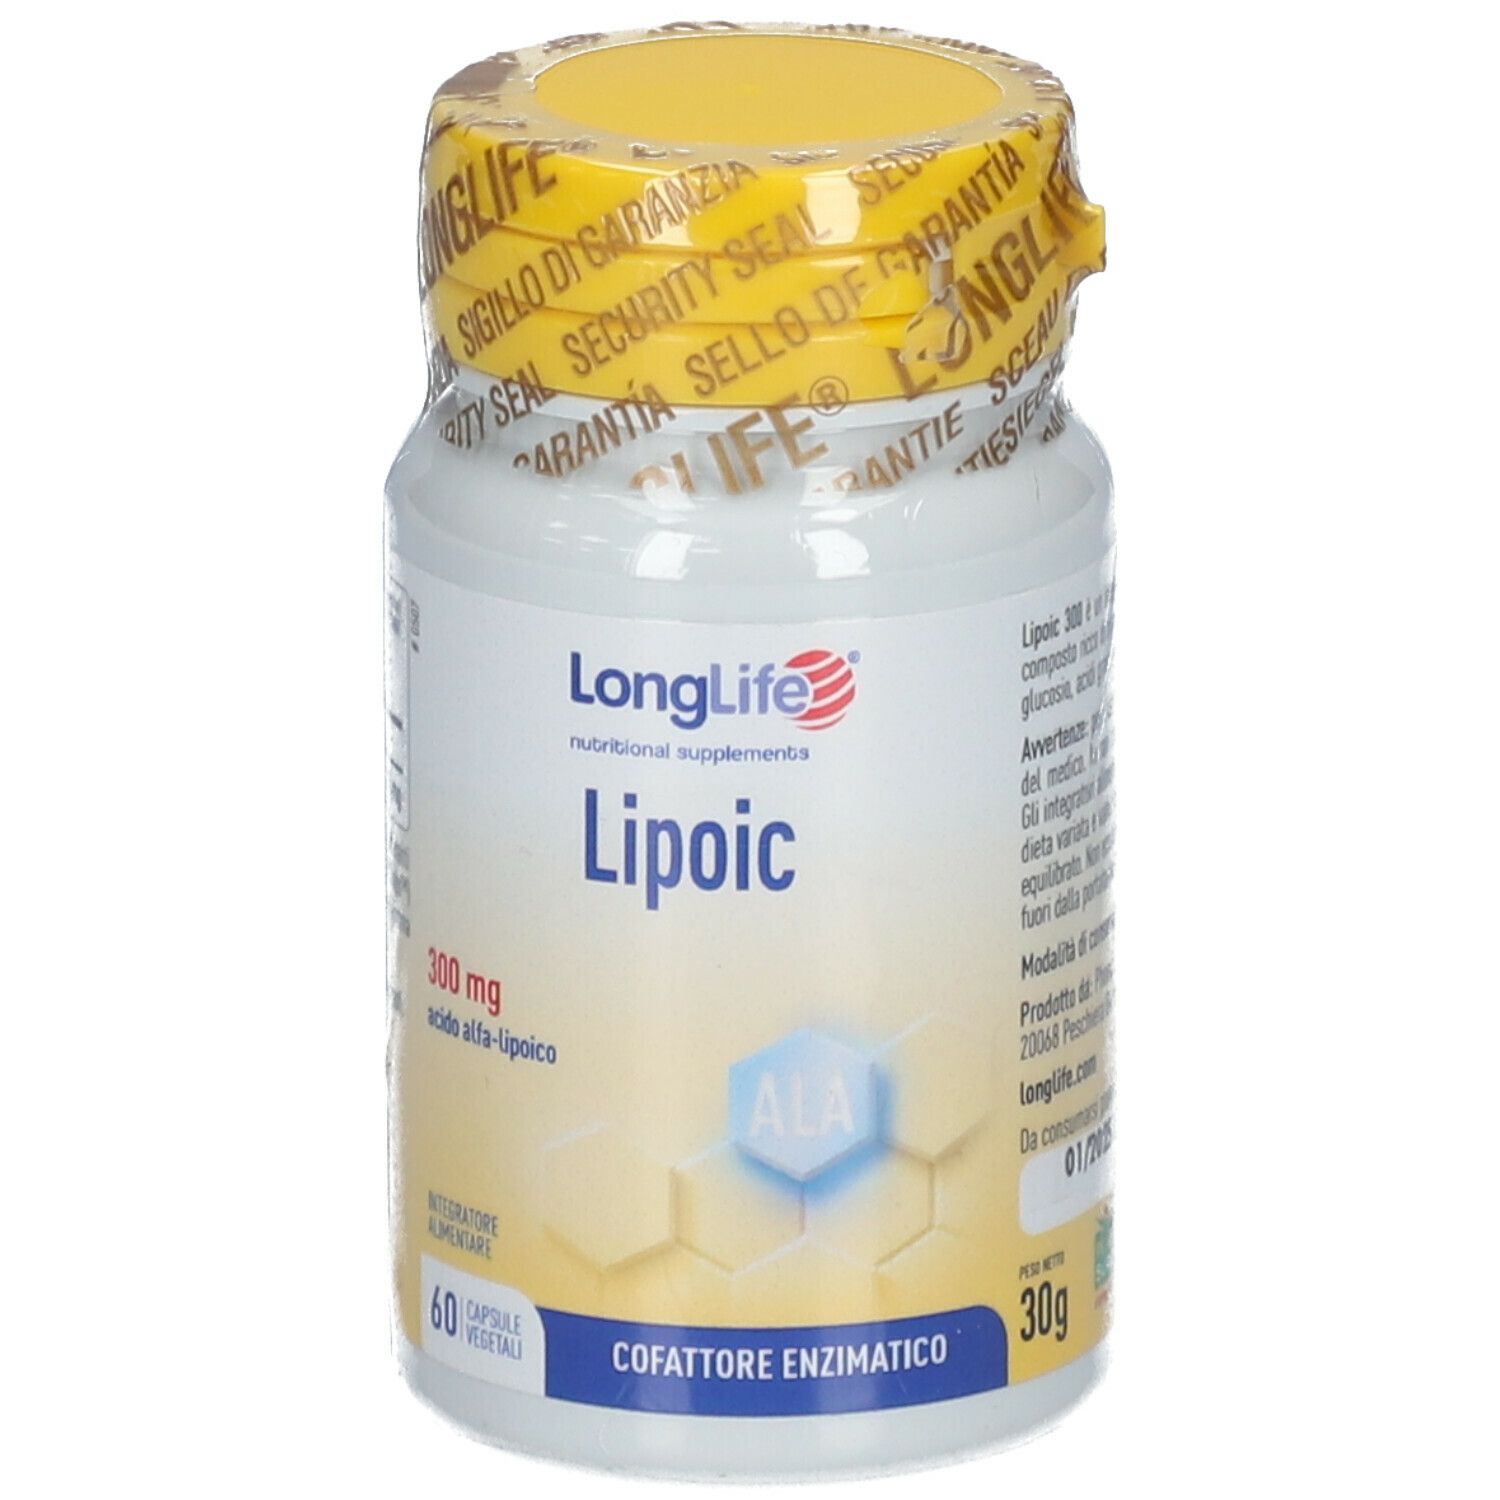 LongLife® Lipoic Capsule